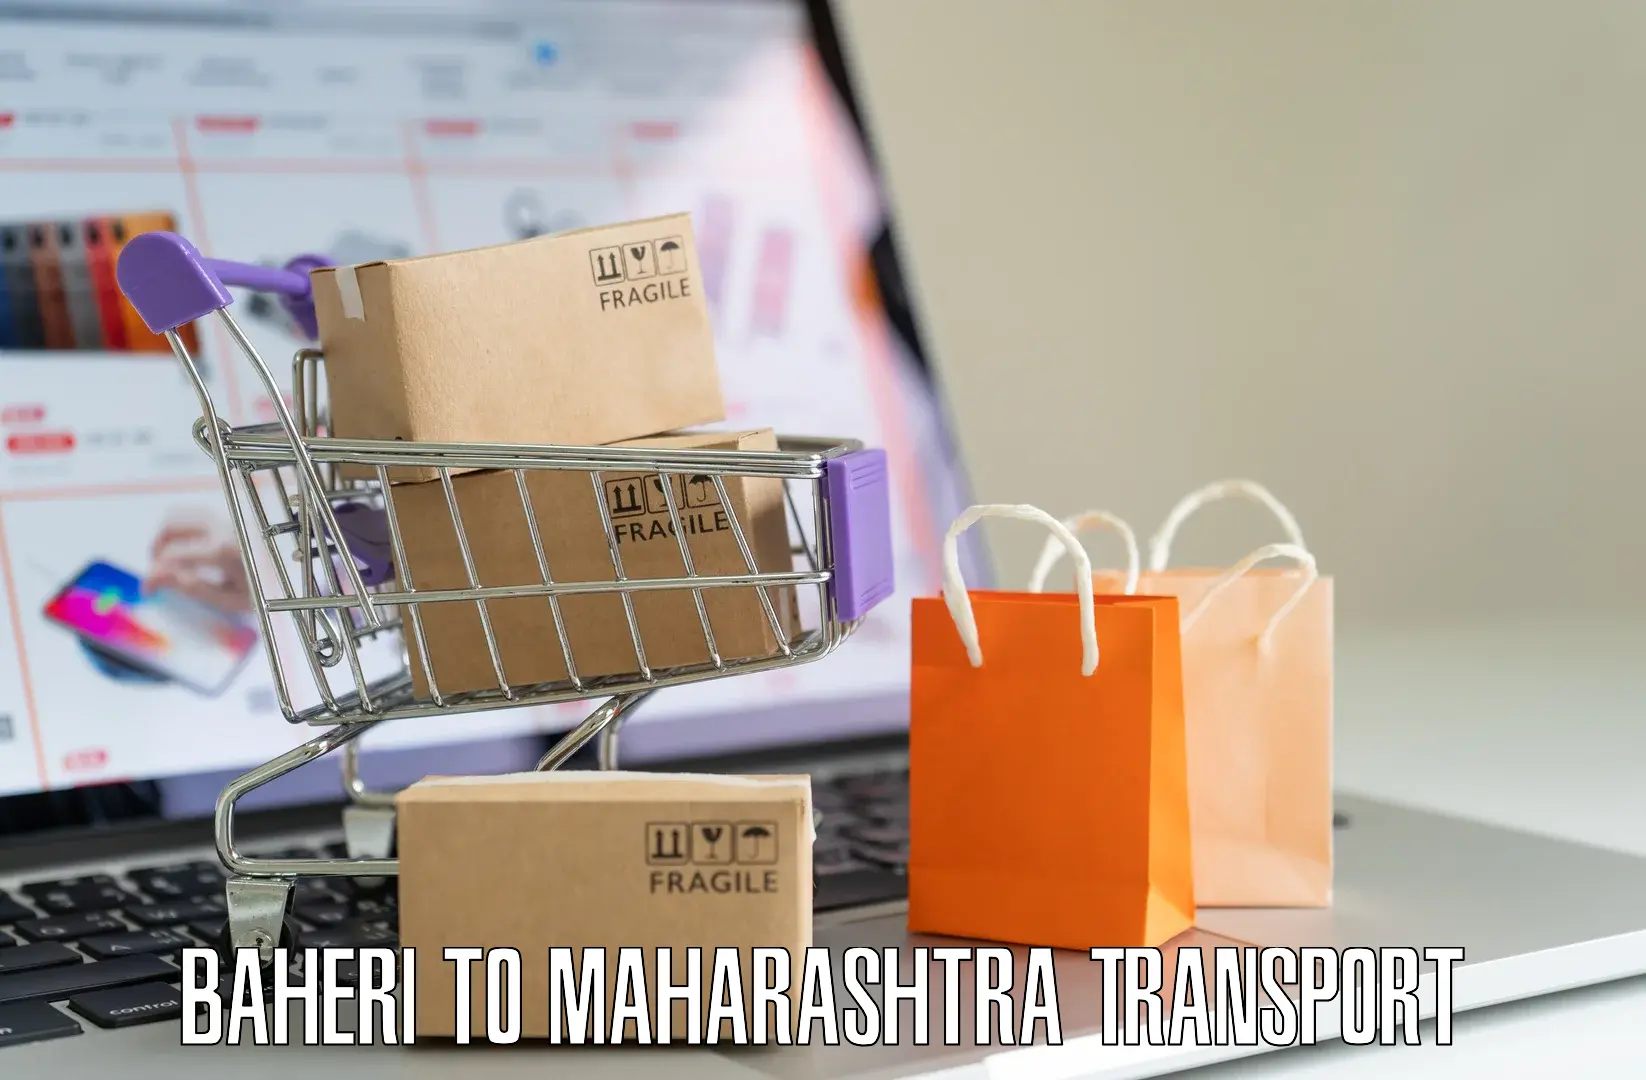 Transportation services Baheri to Maharashtra